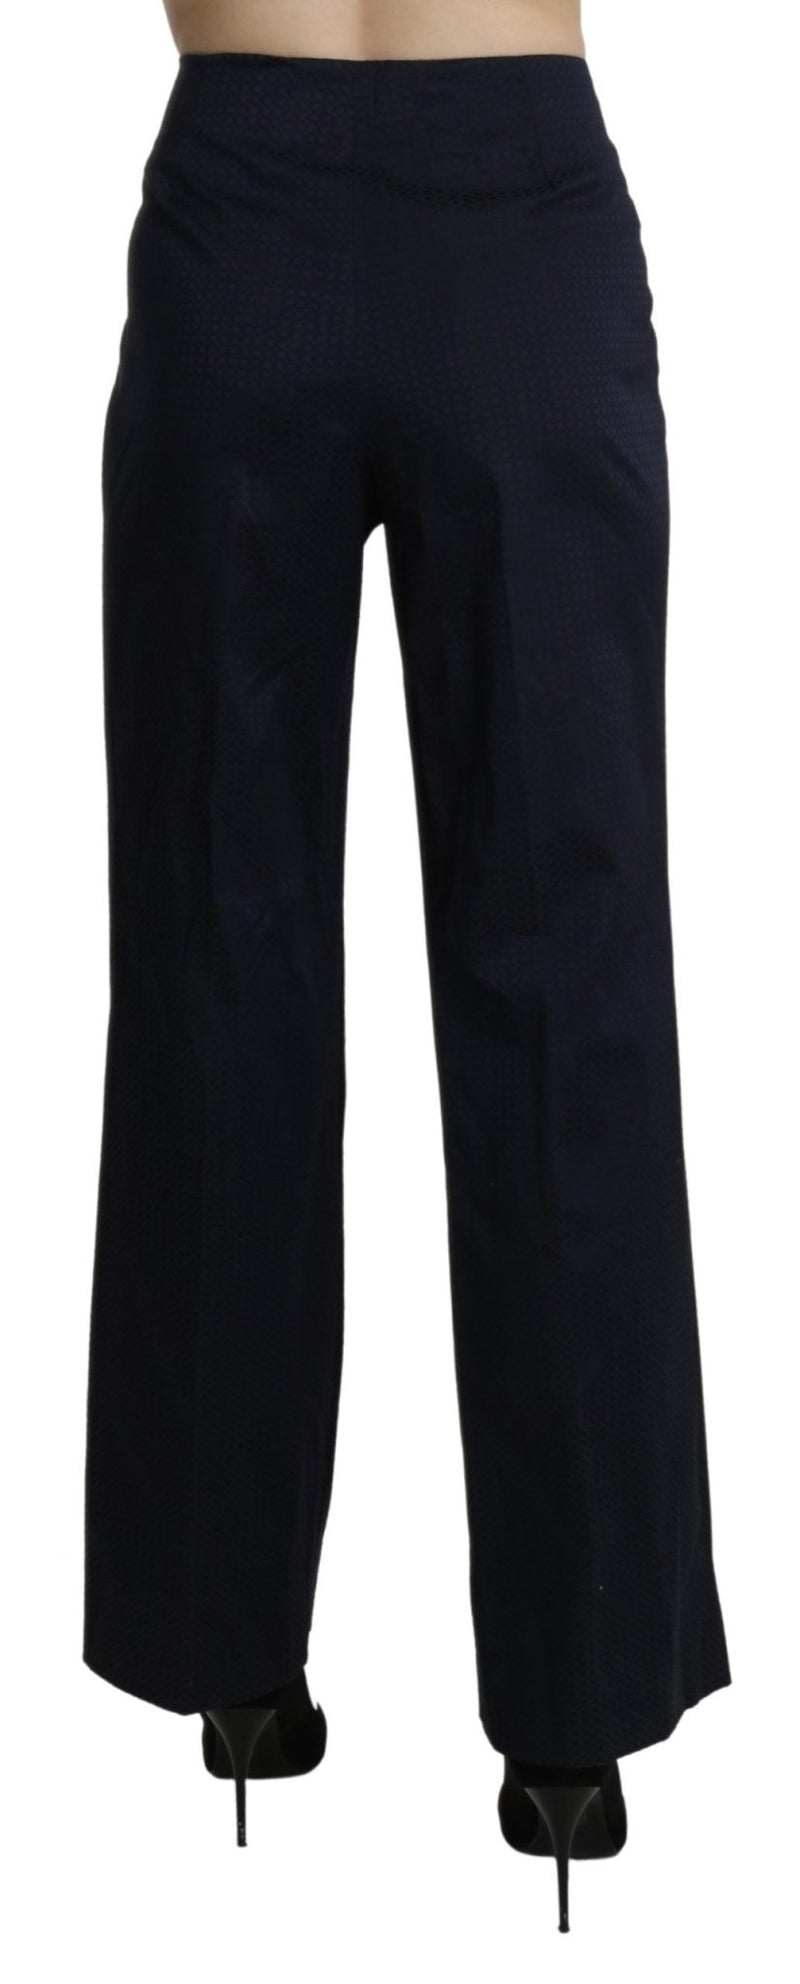 Navy Blue High Waist Straight Dress Trouser Pants - Avaz Shop